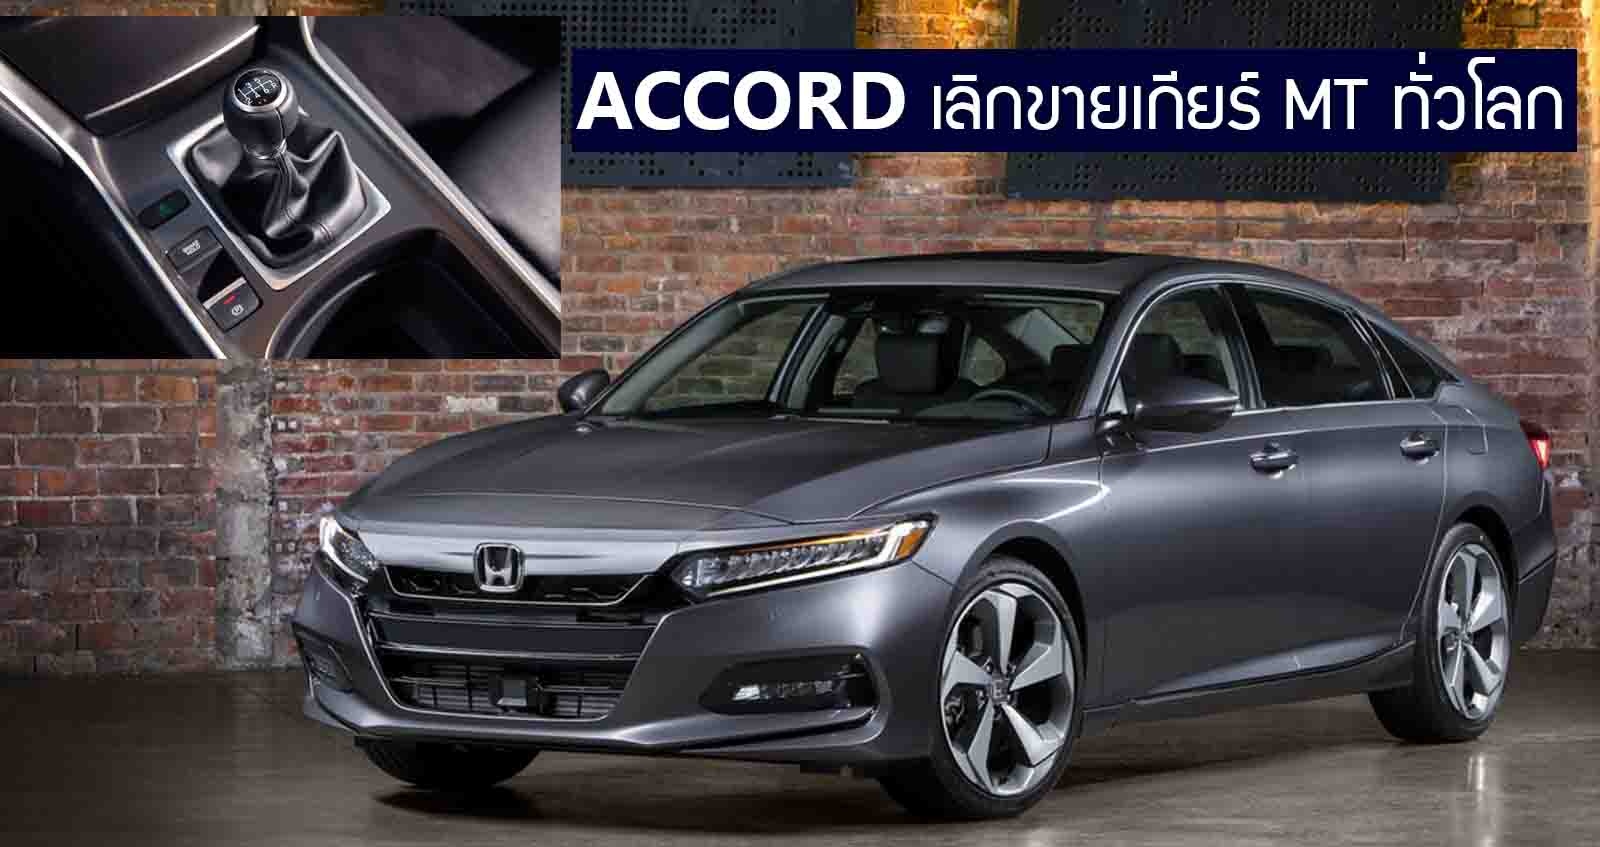 Honda Accord เลิกผลิตเกียร์ธรรมดา MT ทั่วโลก